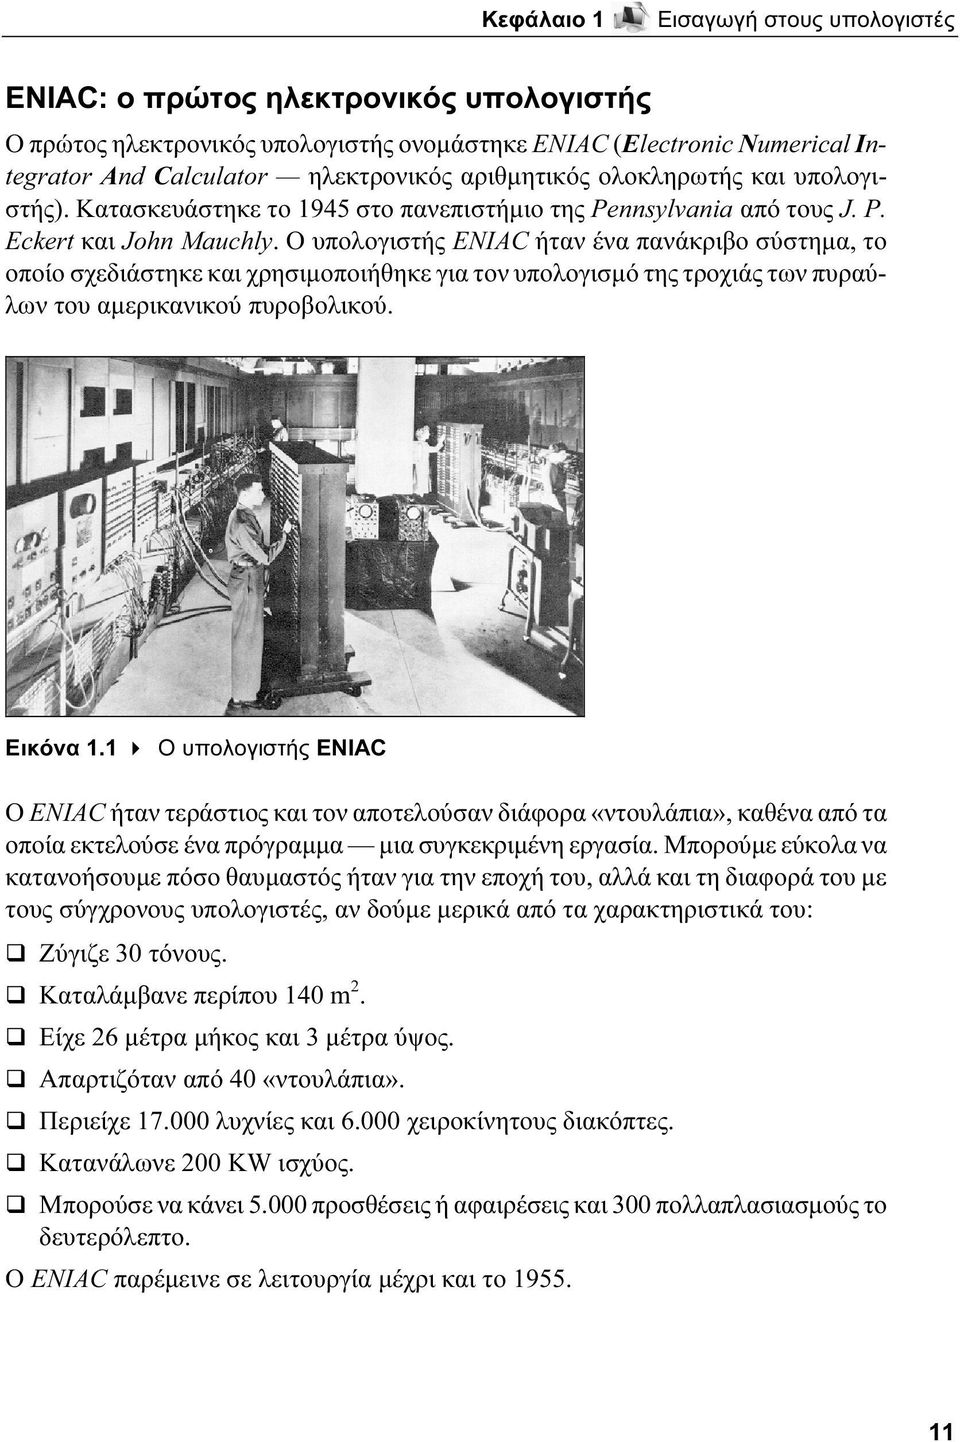 Ο υπολογιστής ENIAC ήταν ένα πανάκριβο σύστημα, το οποίο σχεδιάστηκε και χρησιμοποιήθηκε για τον υπολογισμό της τροχιάς των πυραύλων του αμερικανικού πυροβολικού. Εικόνα 1.